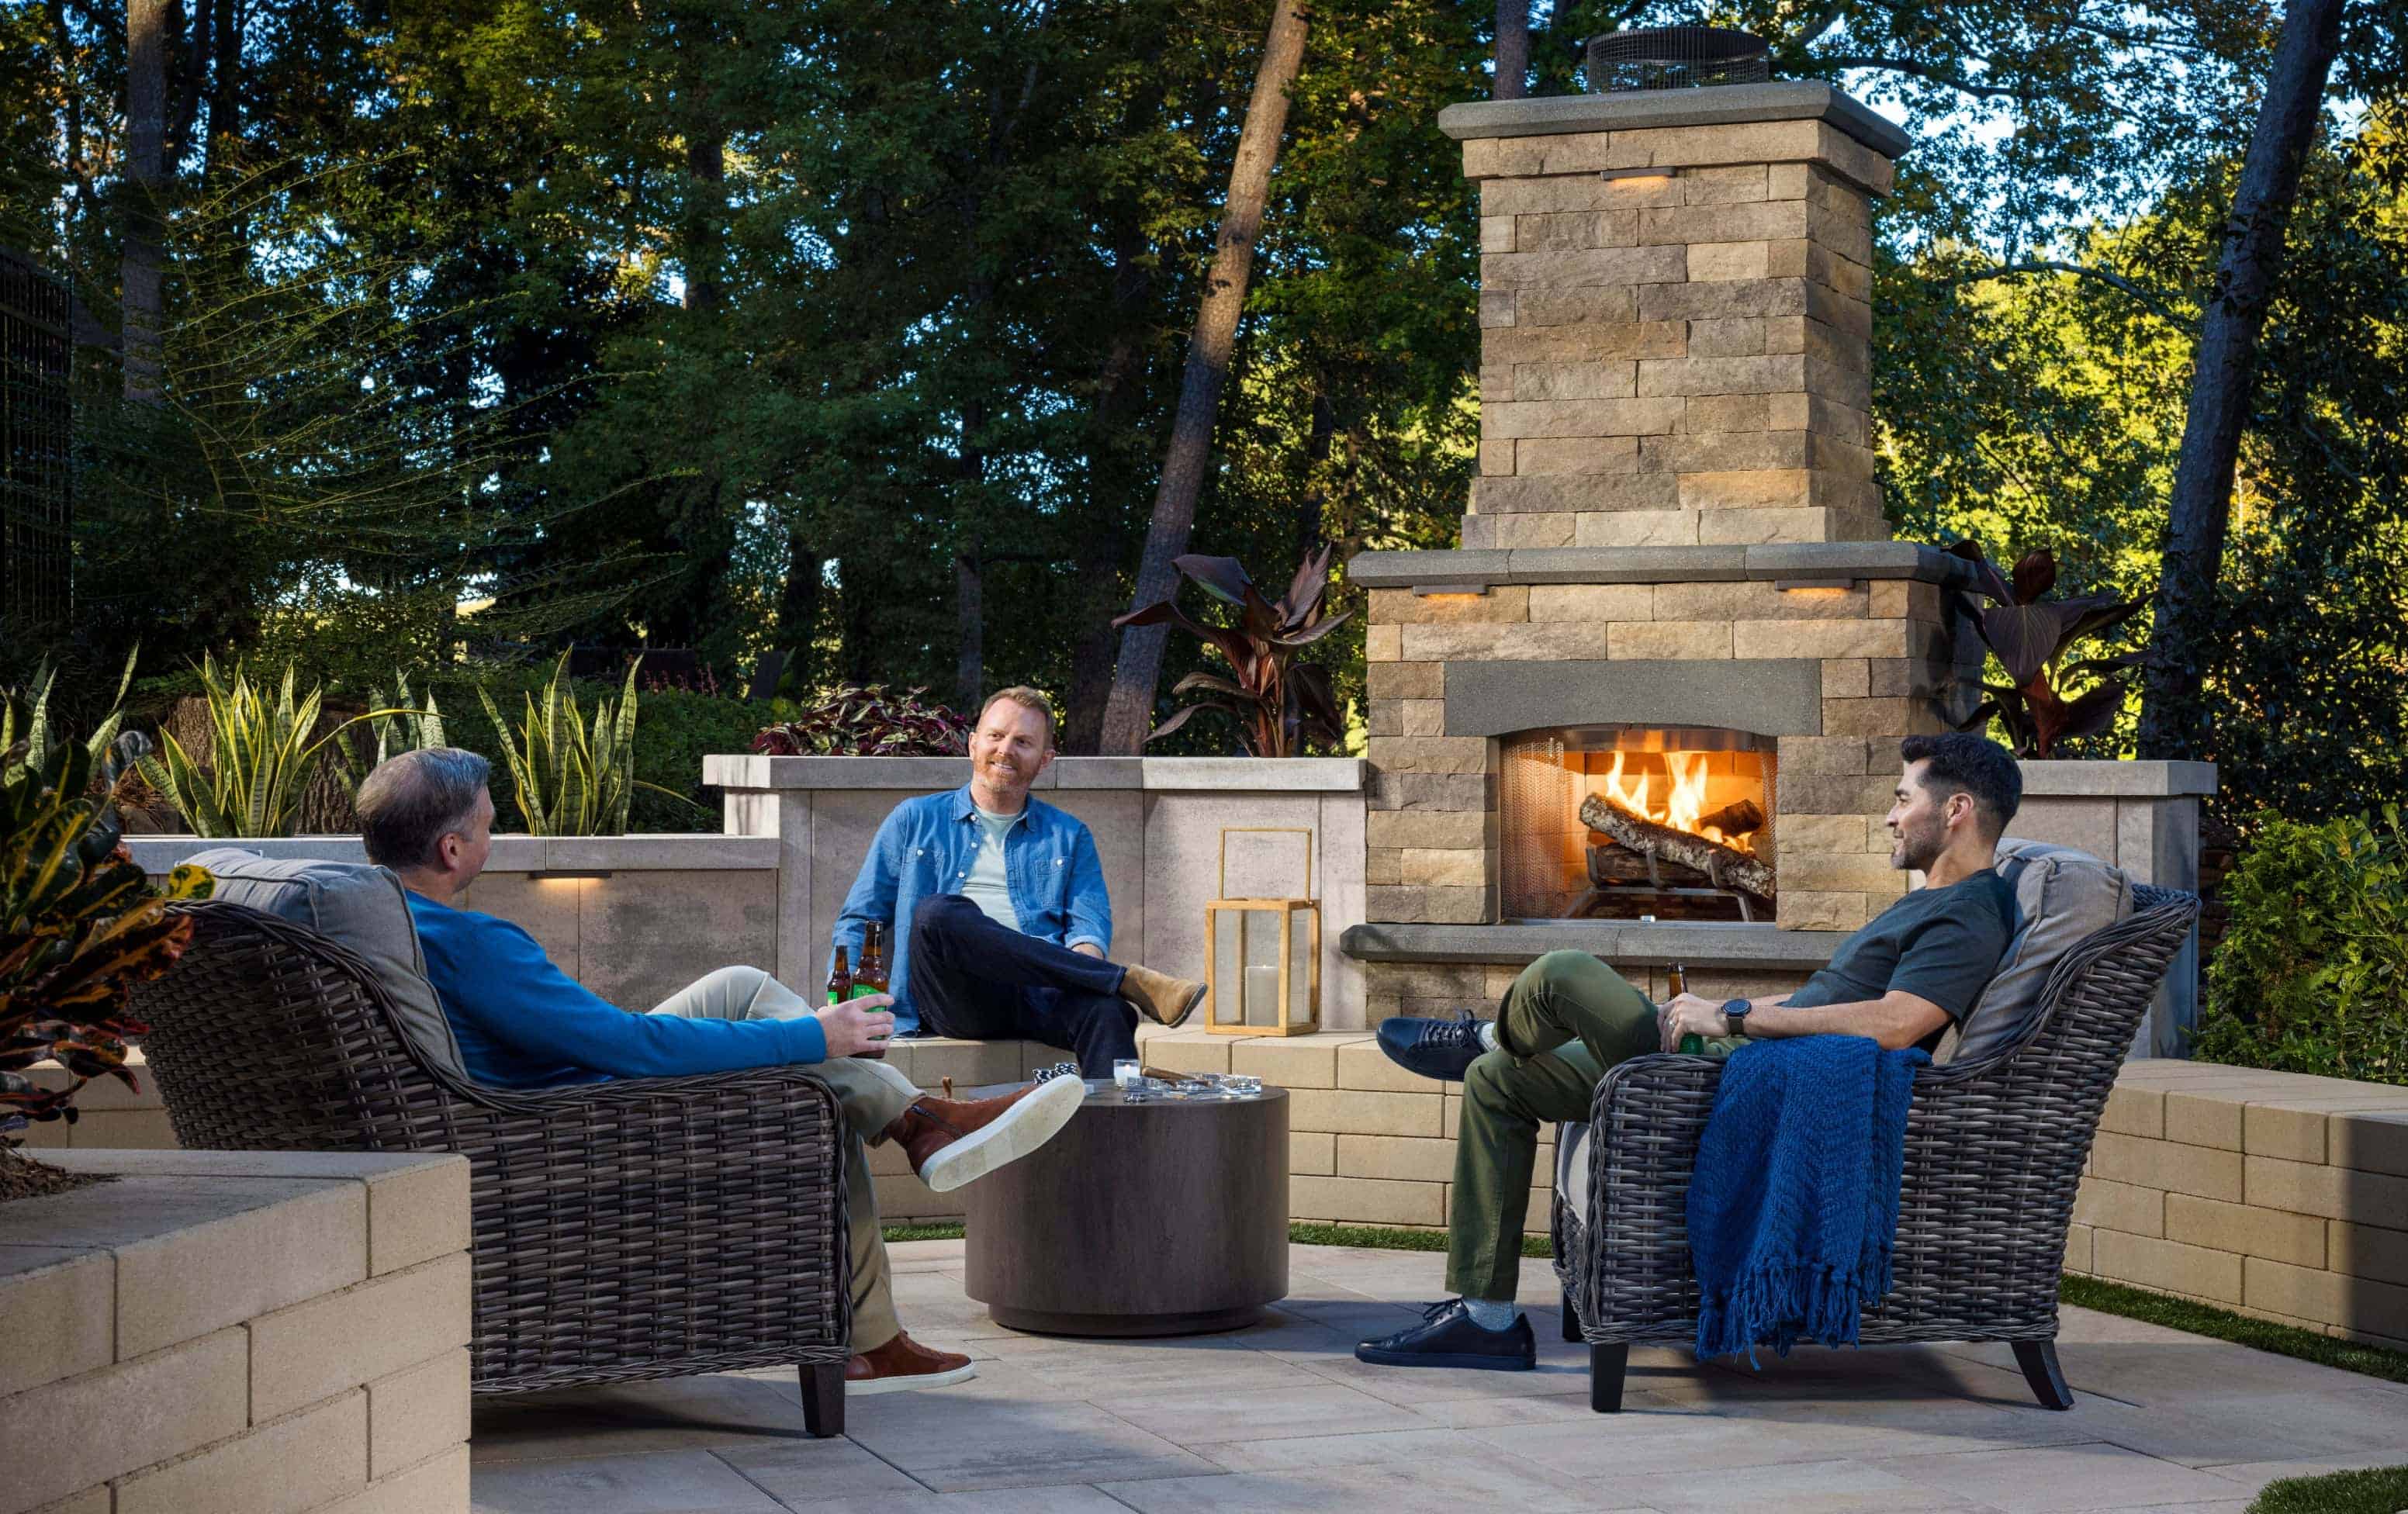 3 friends enjoying a conversation outside near a fireplace